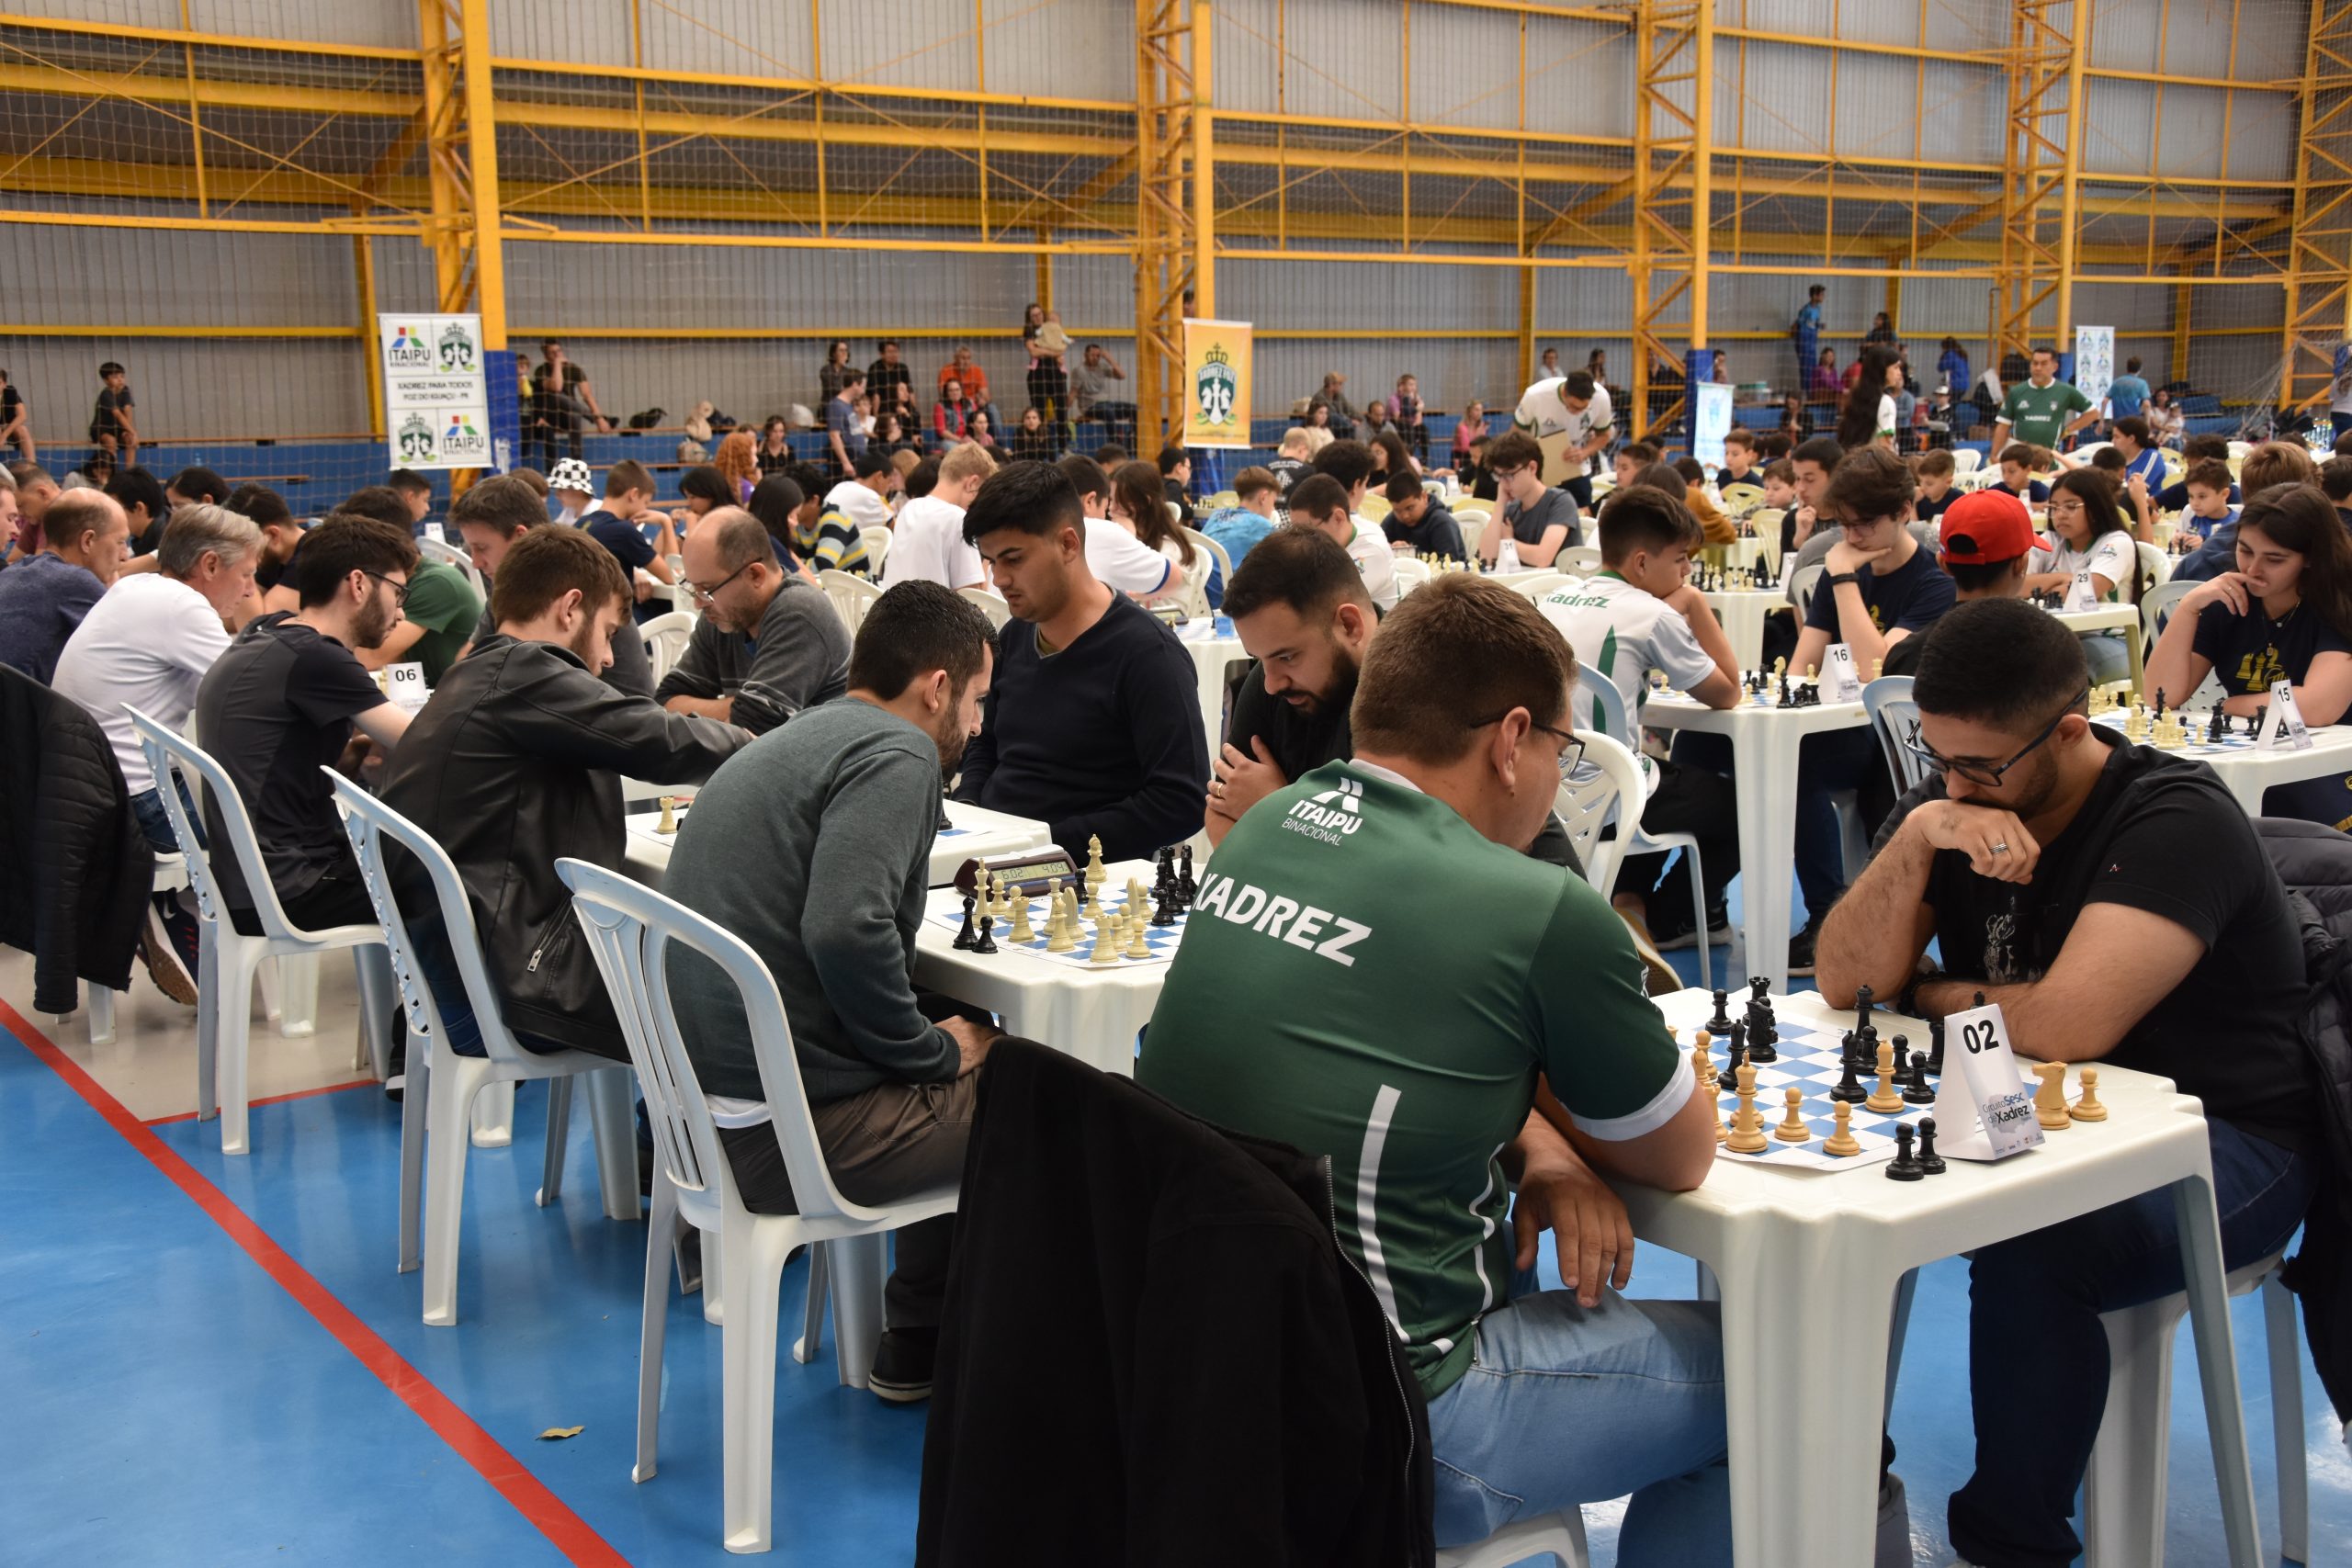 Torneio Sesc do Paraná de Xadrez on-line conta com 2.500 participantes